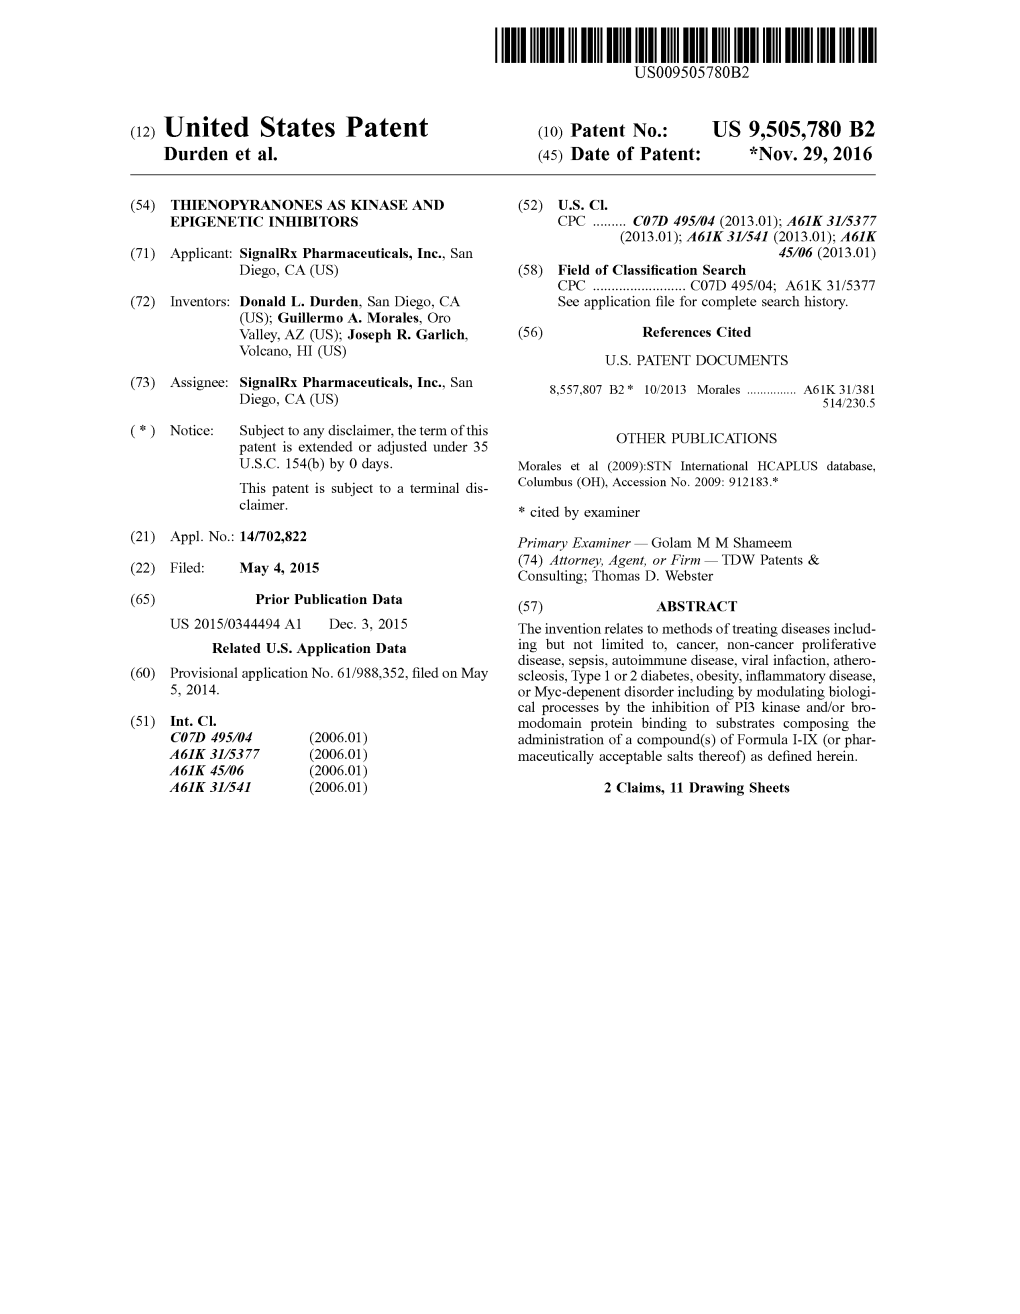 (12) United States Patent (10) Patent No.: US 9,505,780 B2 Durden Et Al